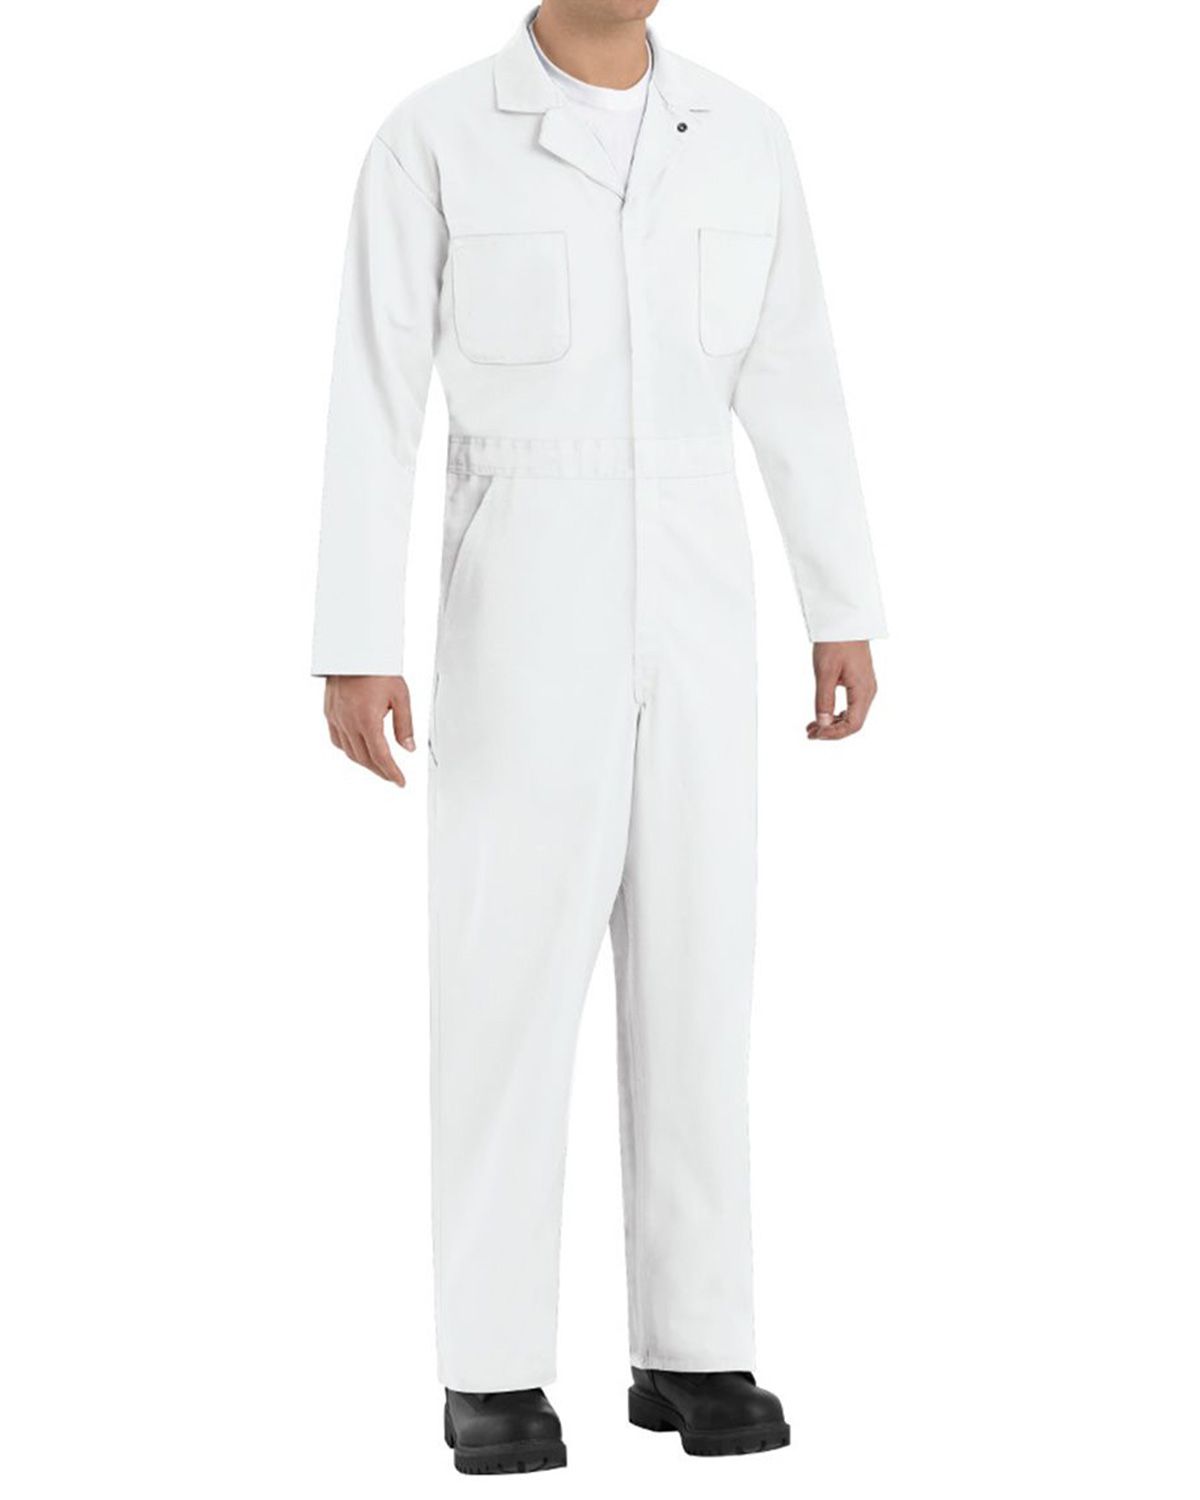 white overalls cheap